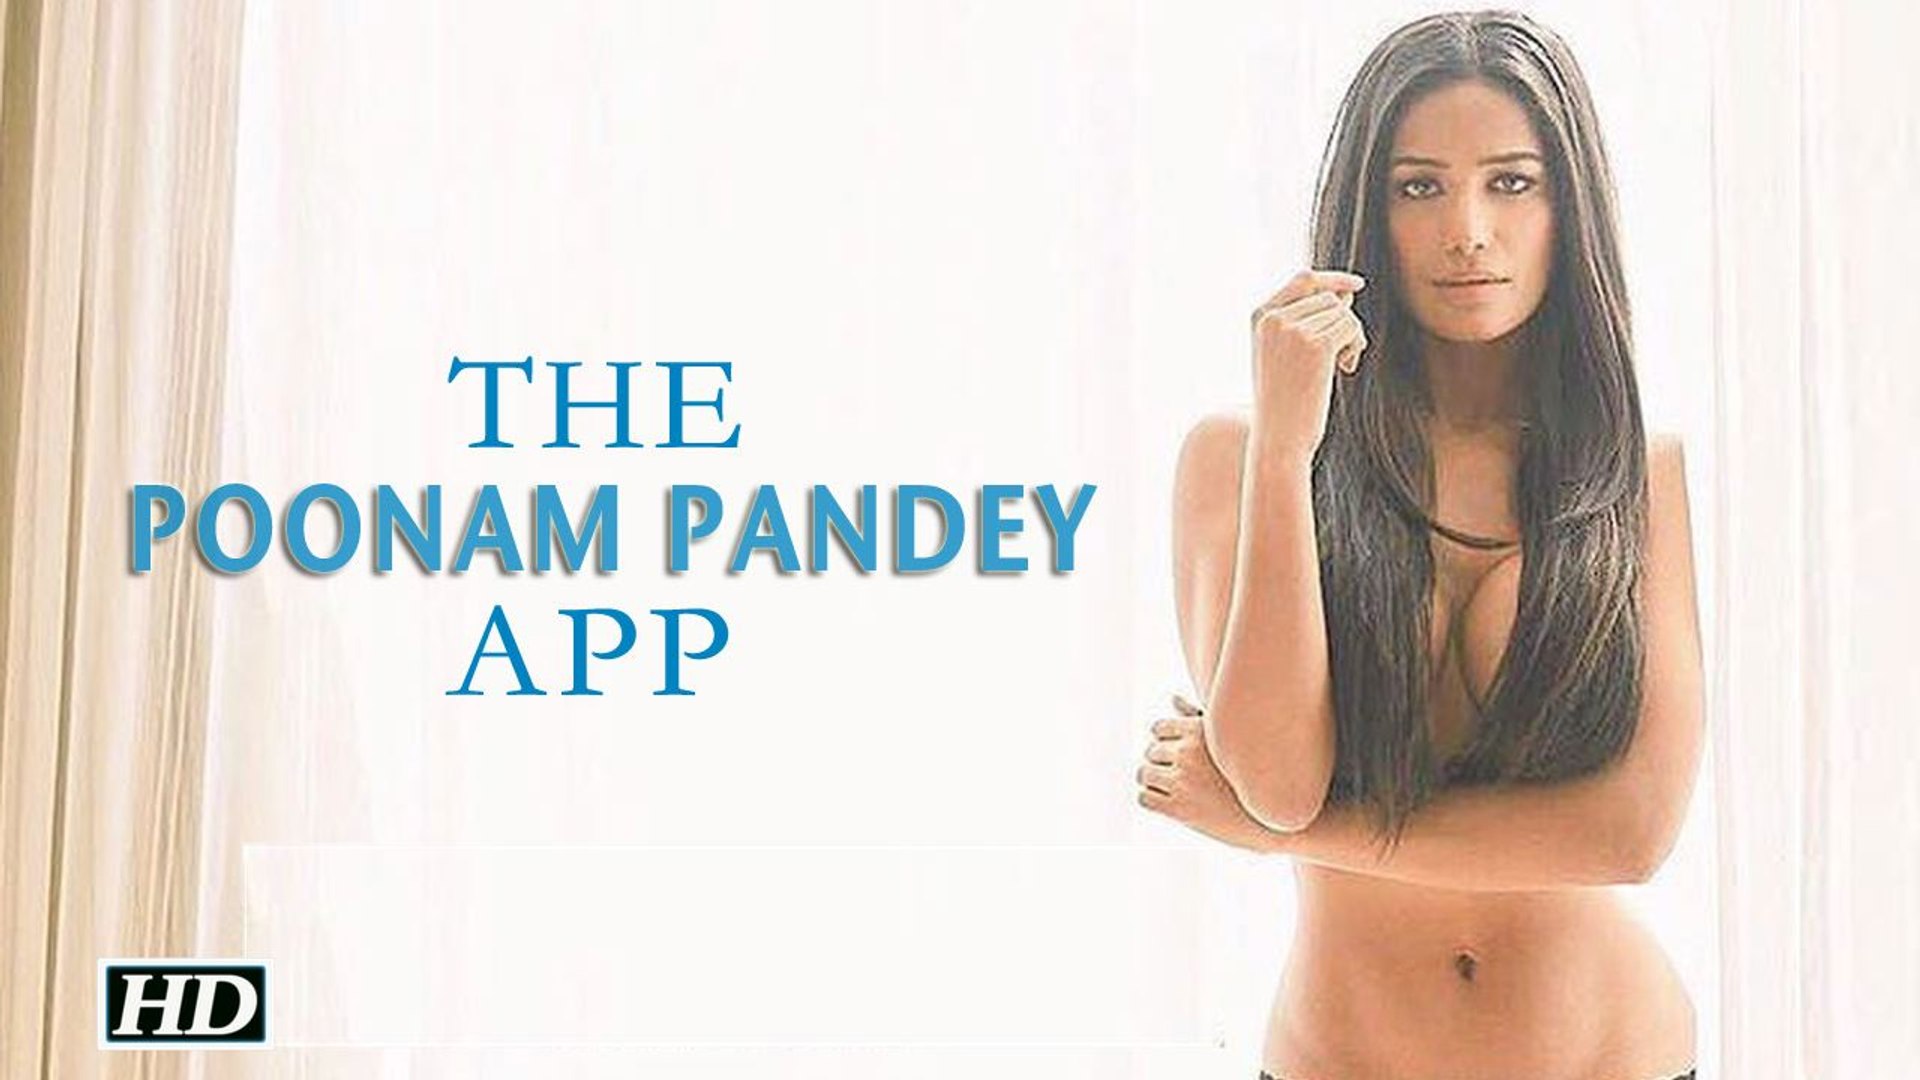 Poonam pandey app nude